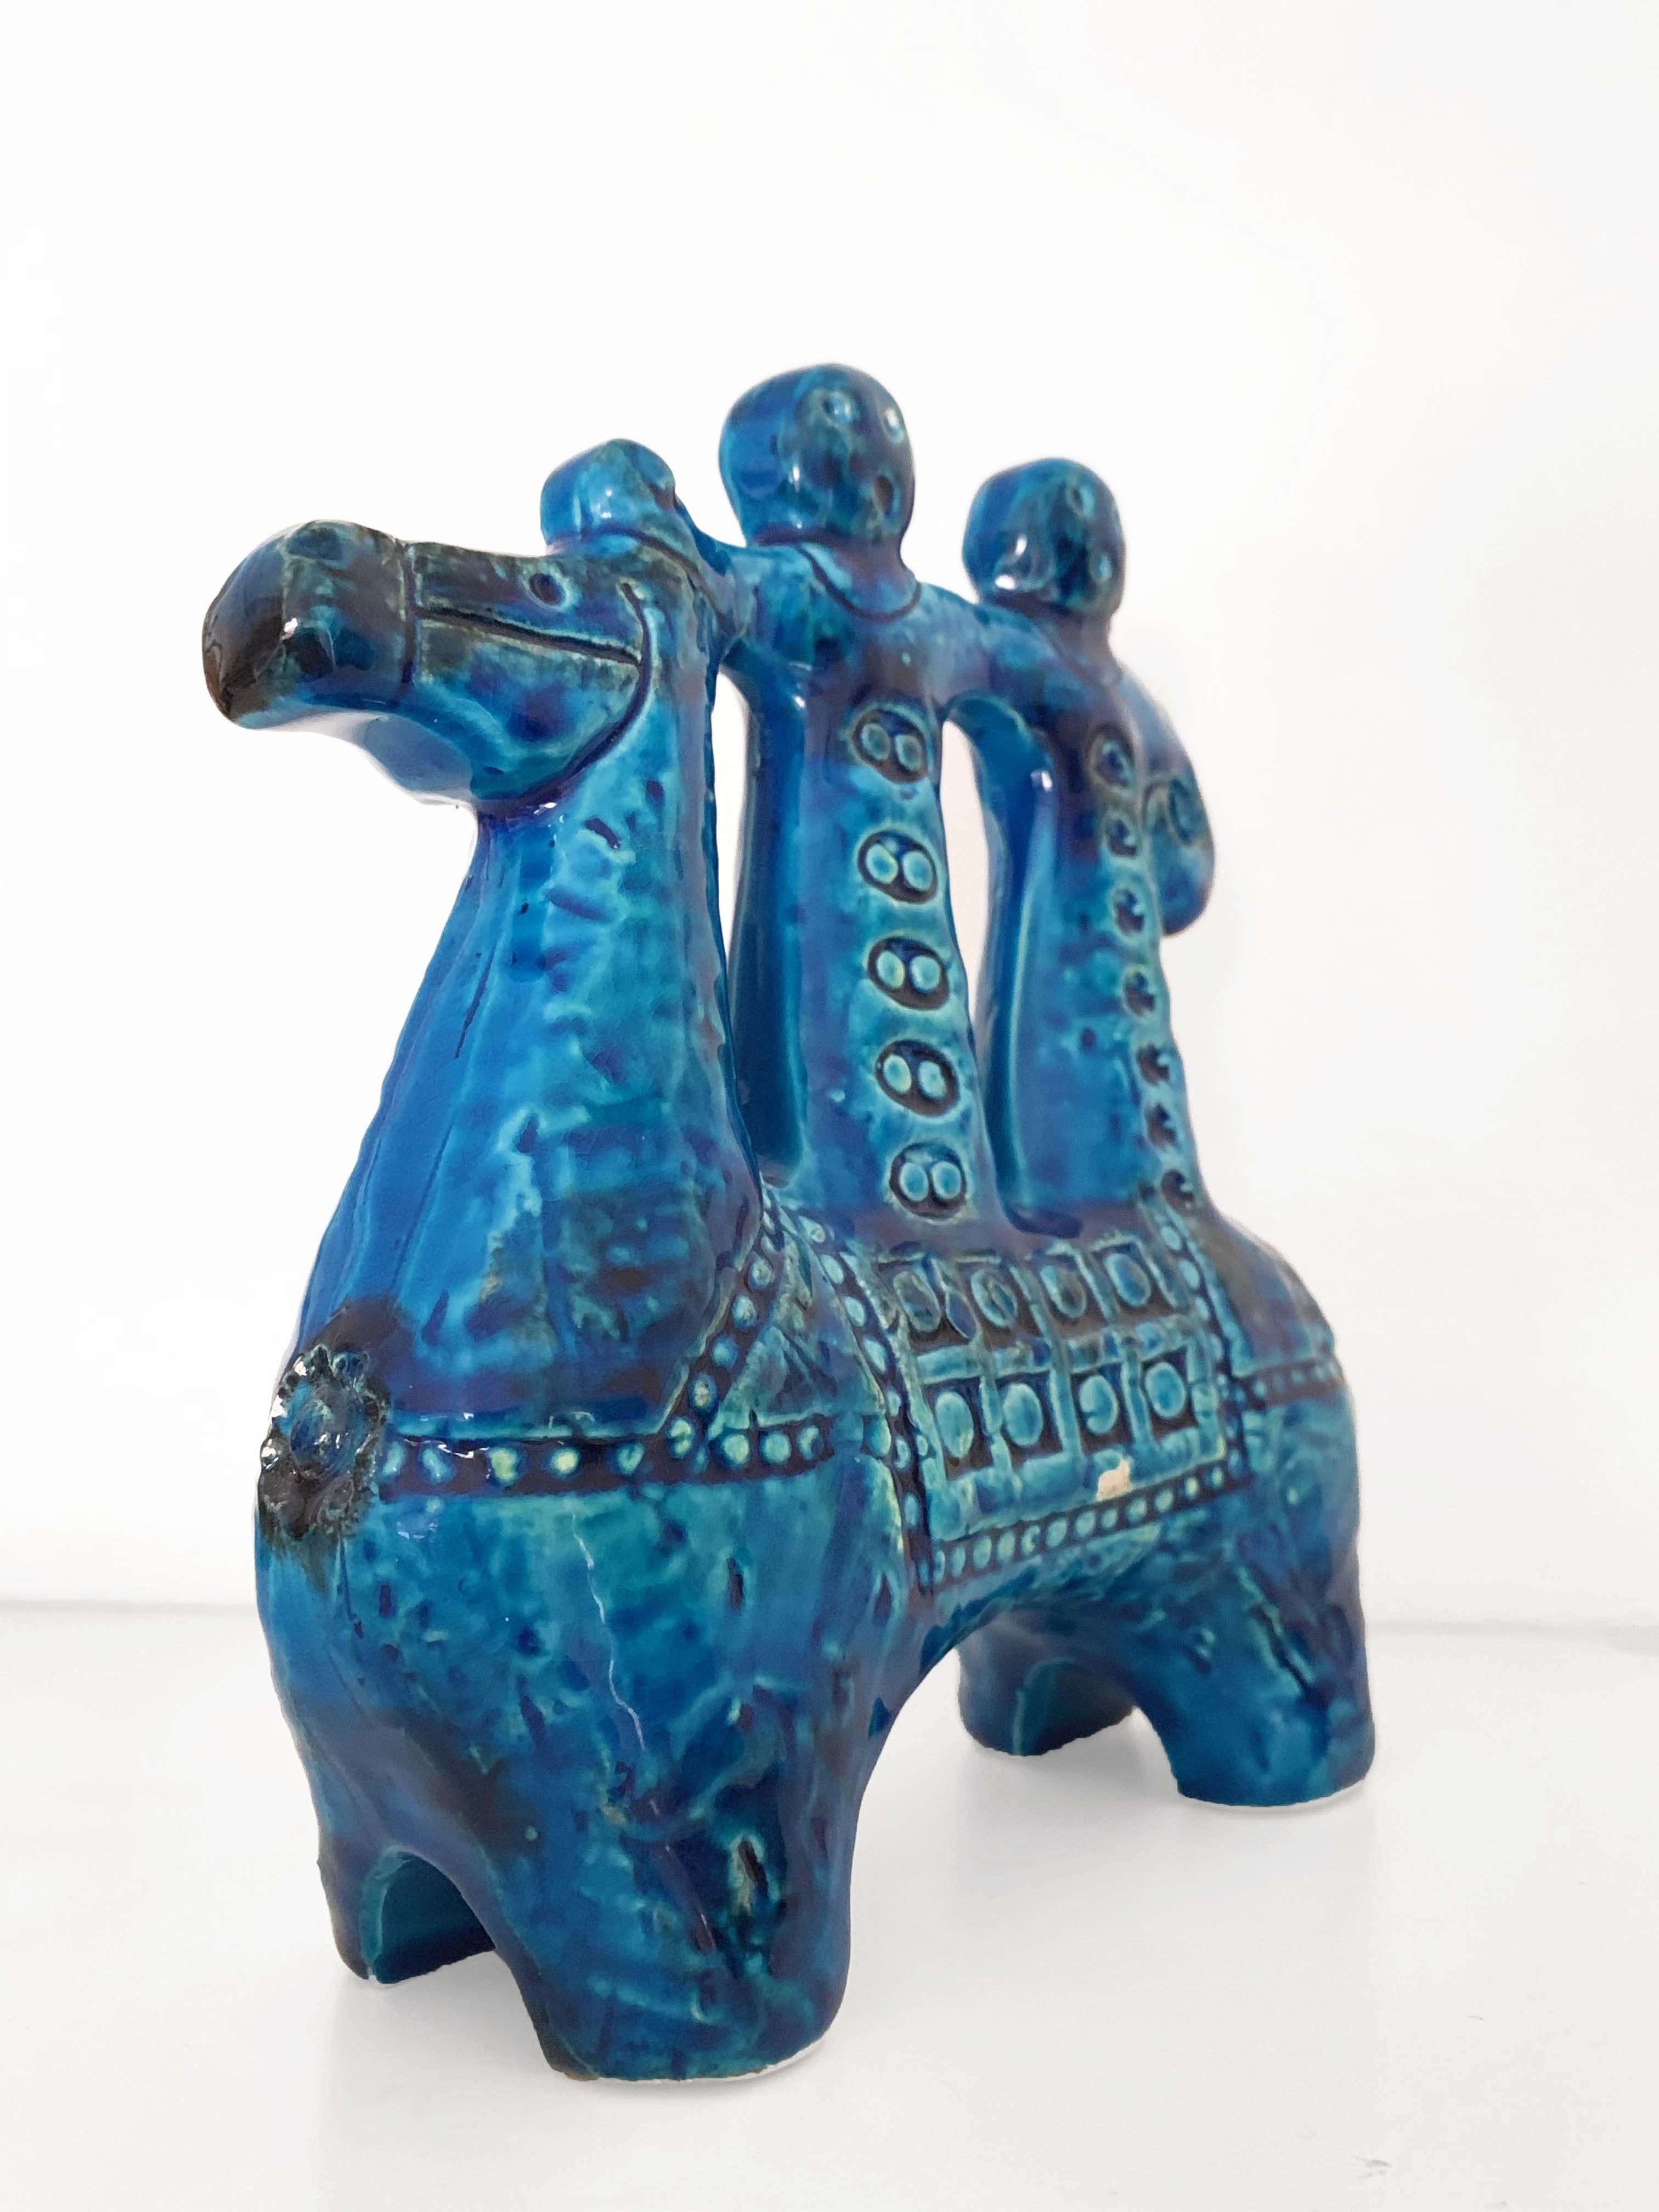 Aldo Londi for Bitossi Rimini Blue Figurine, Horse, Rider, Cavallerizzo Pottery In Good Condition In Roma, IT